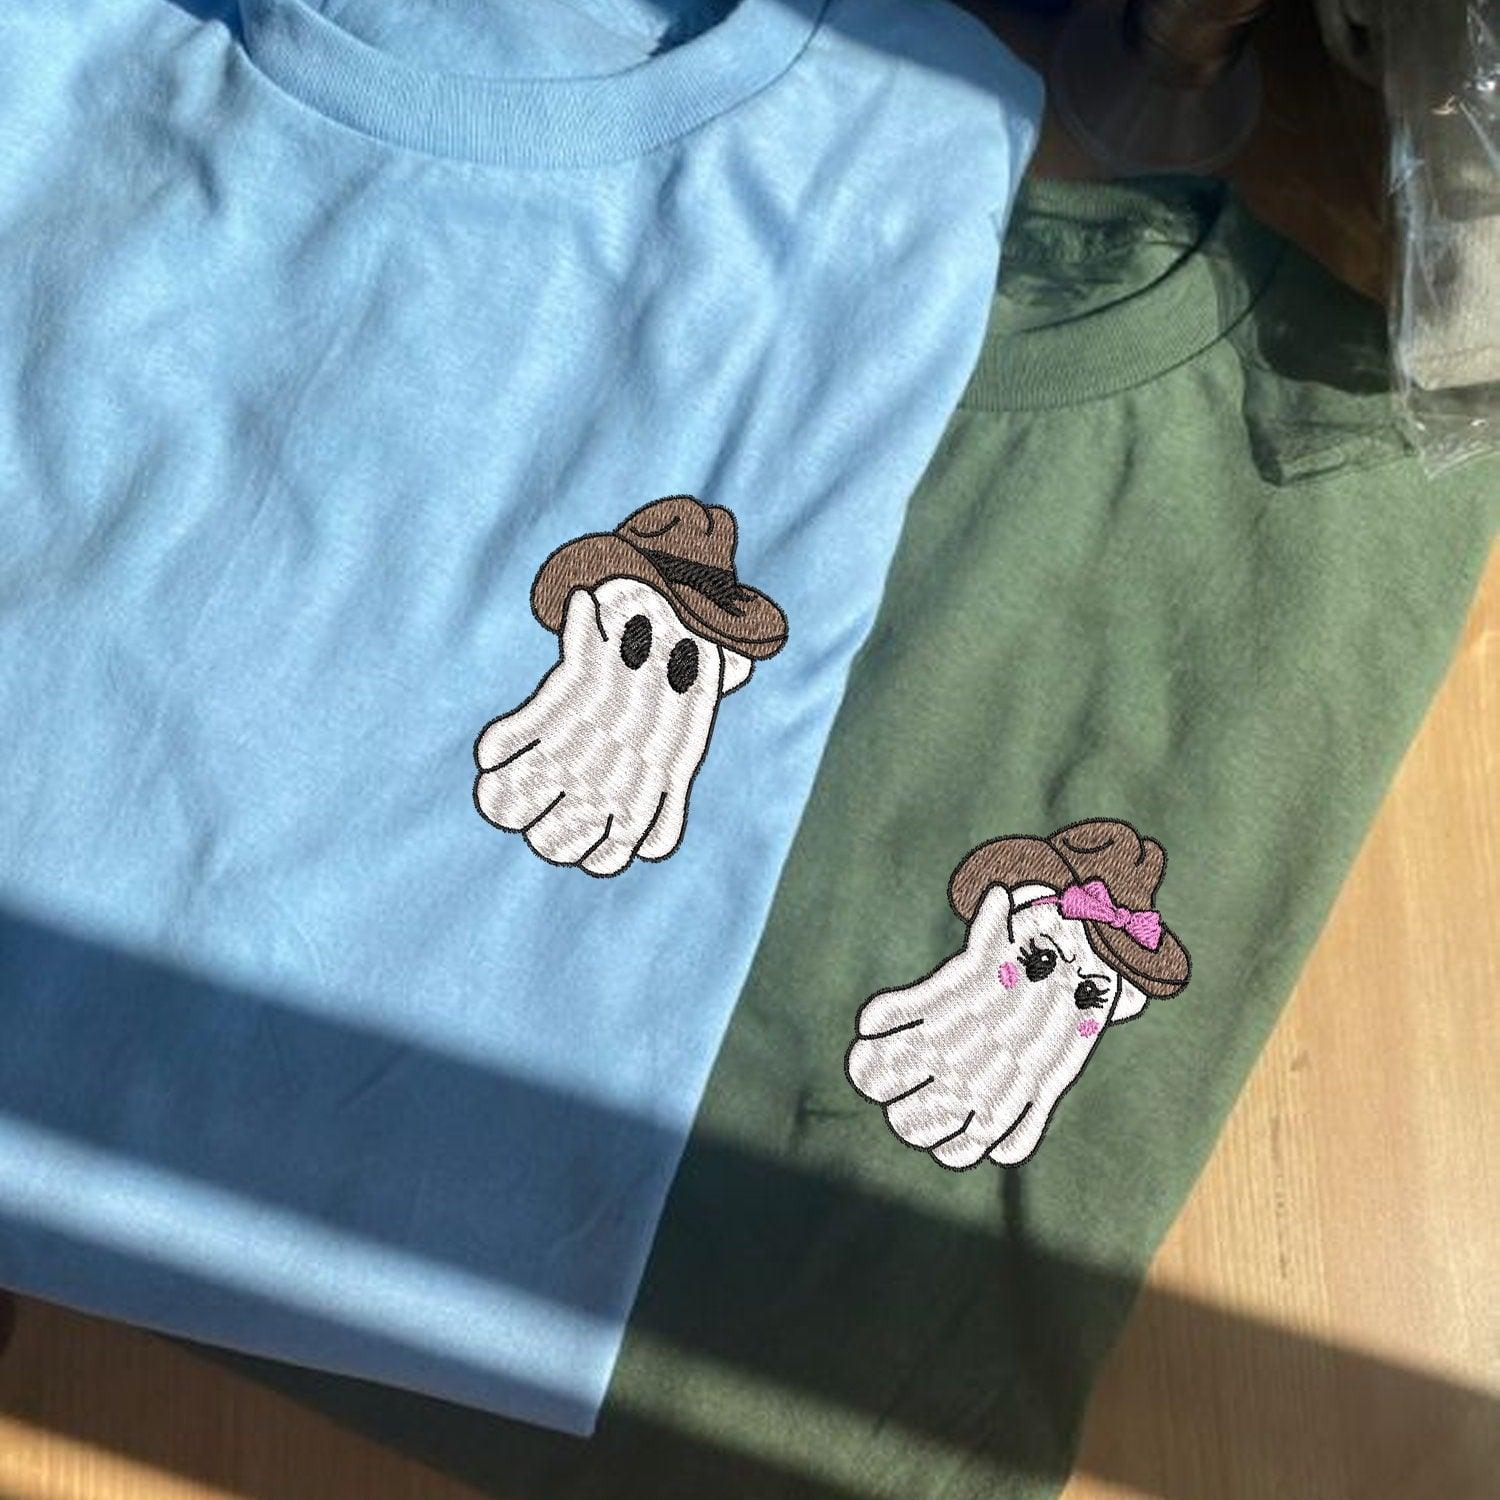 Custom Embroidered Halloweeen Hoodies For Couples, Halloween Couples Cowboy Ghost Embroidered Hoodie, Ghost Spooky Season Hoodie